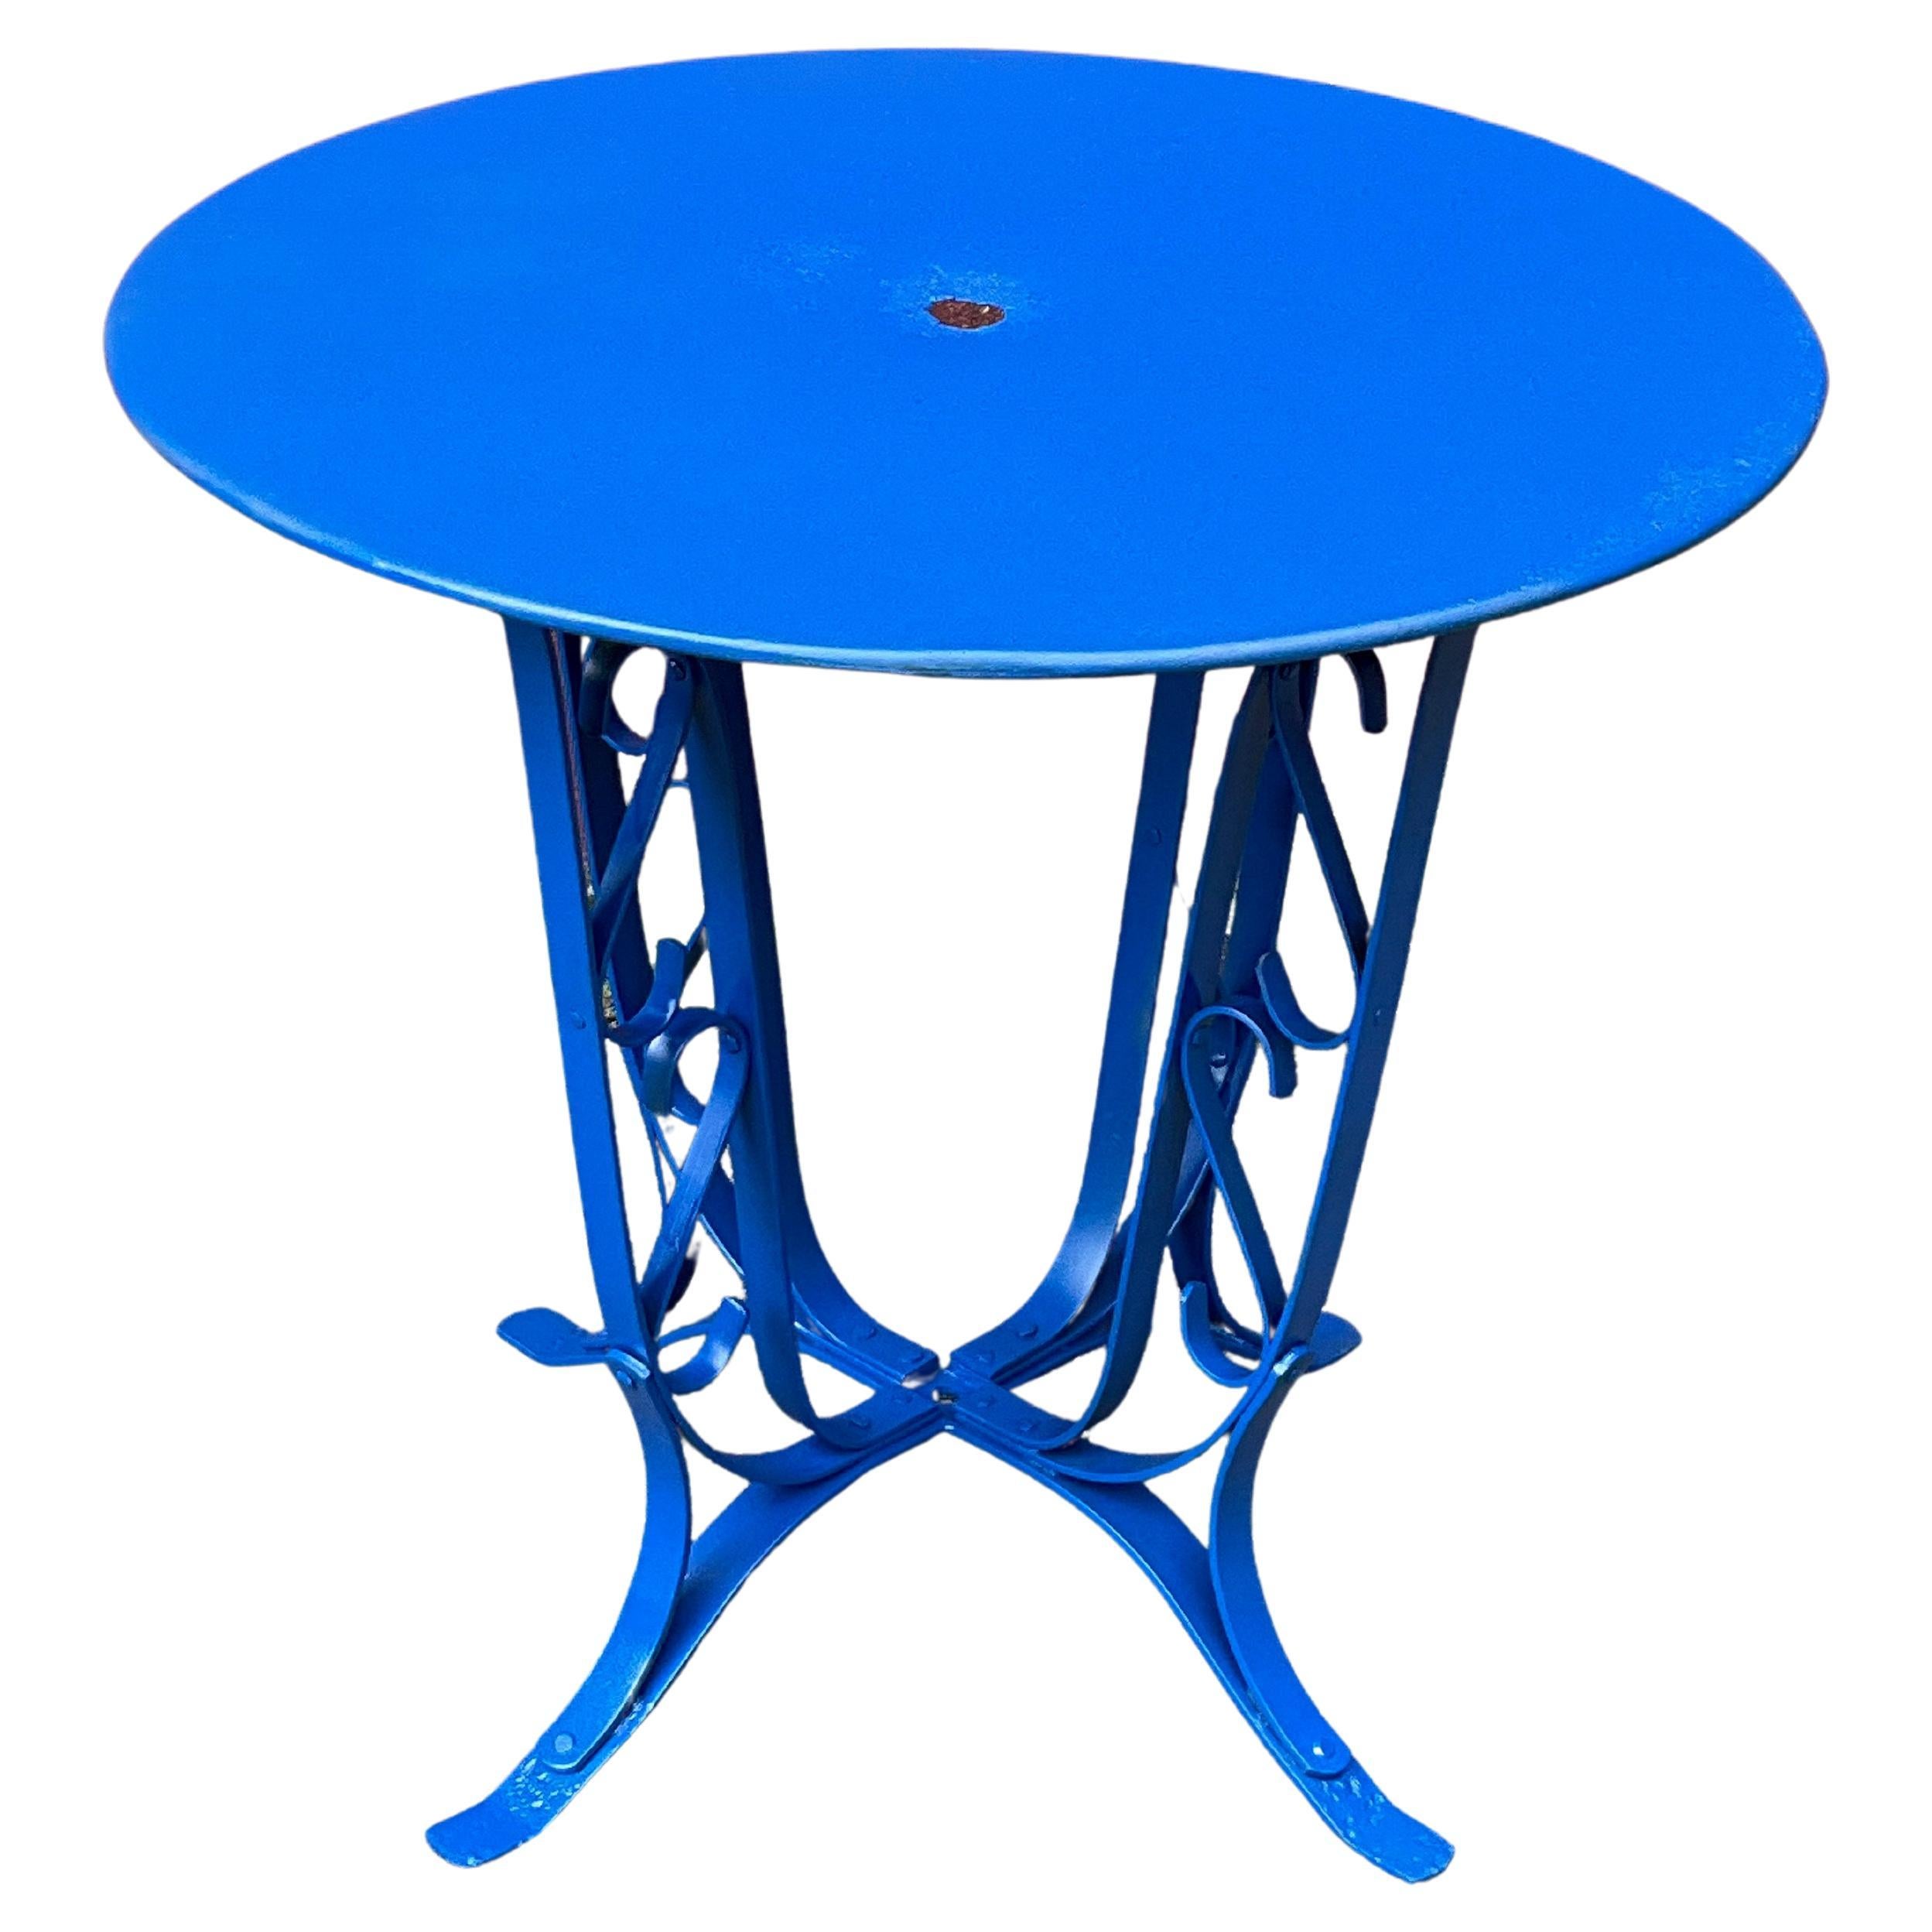 Table de jardin française des années 1920 peinte en bleu